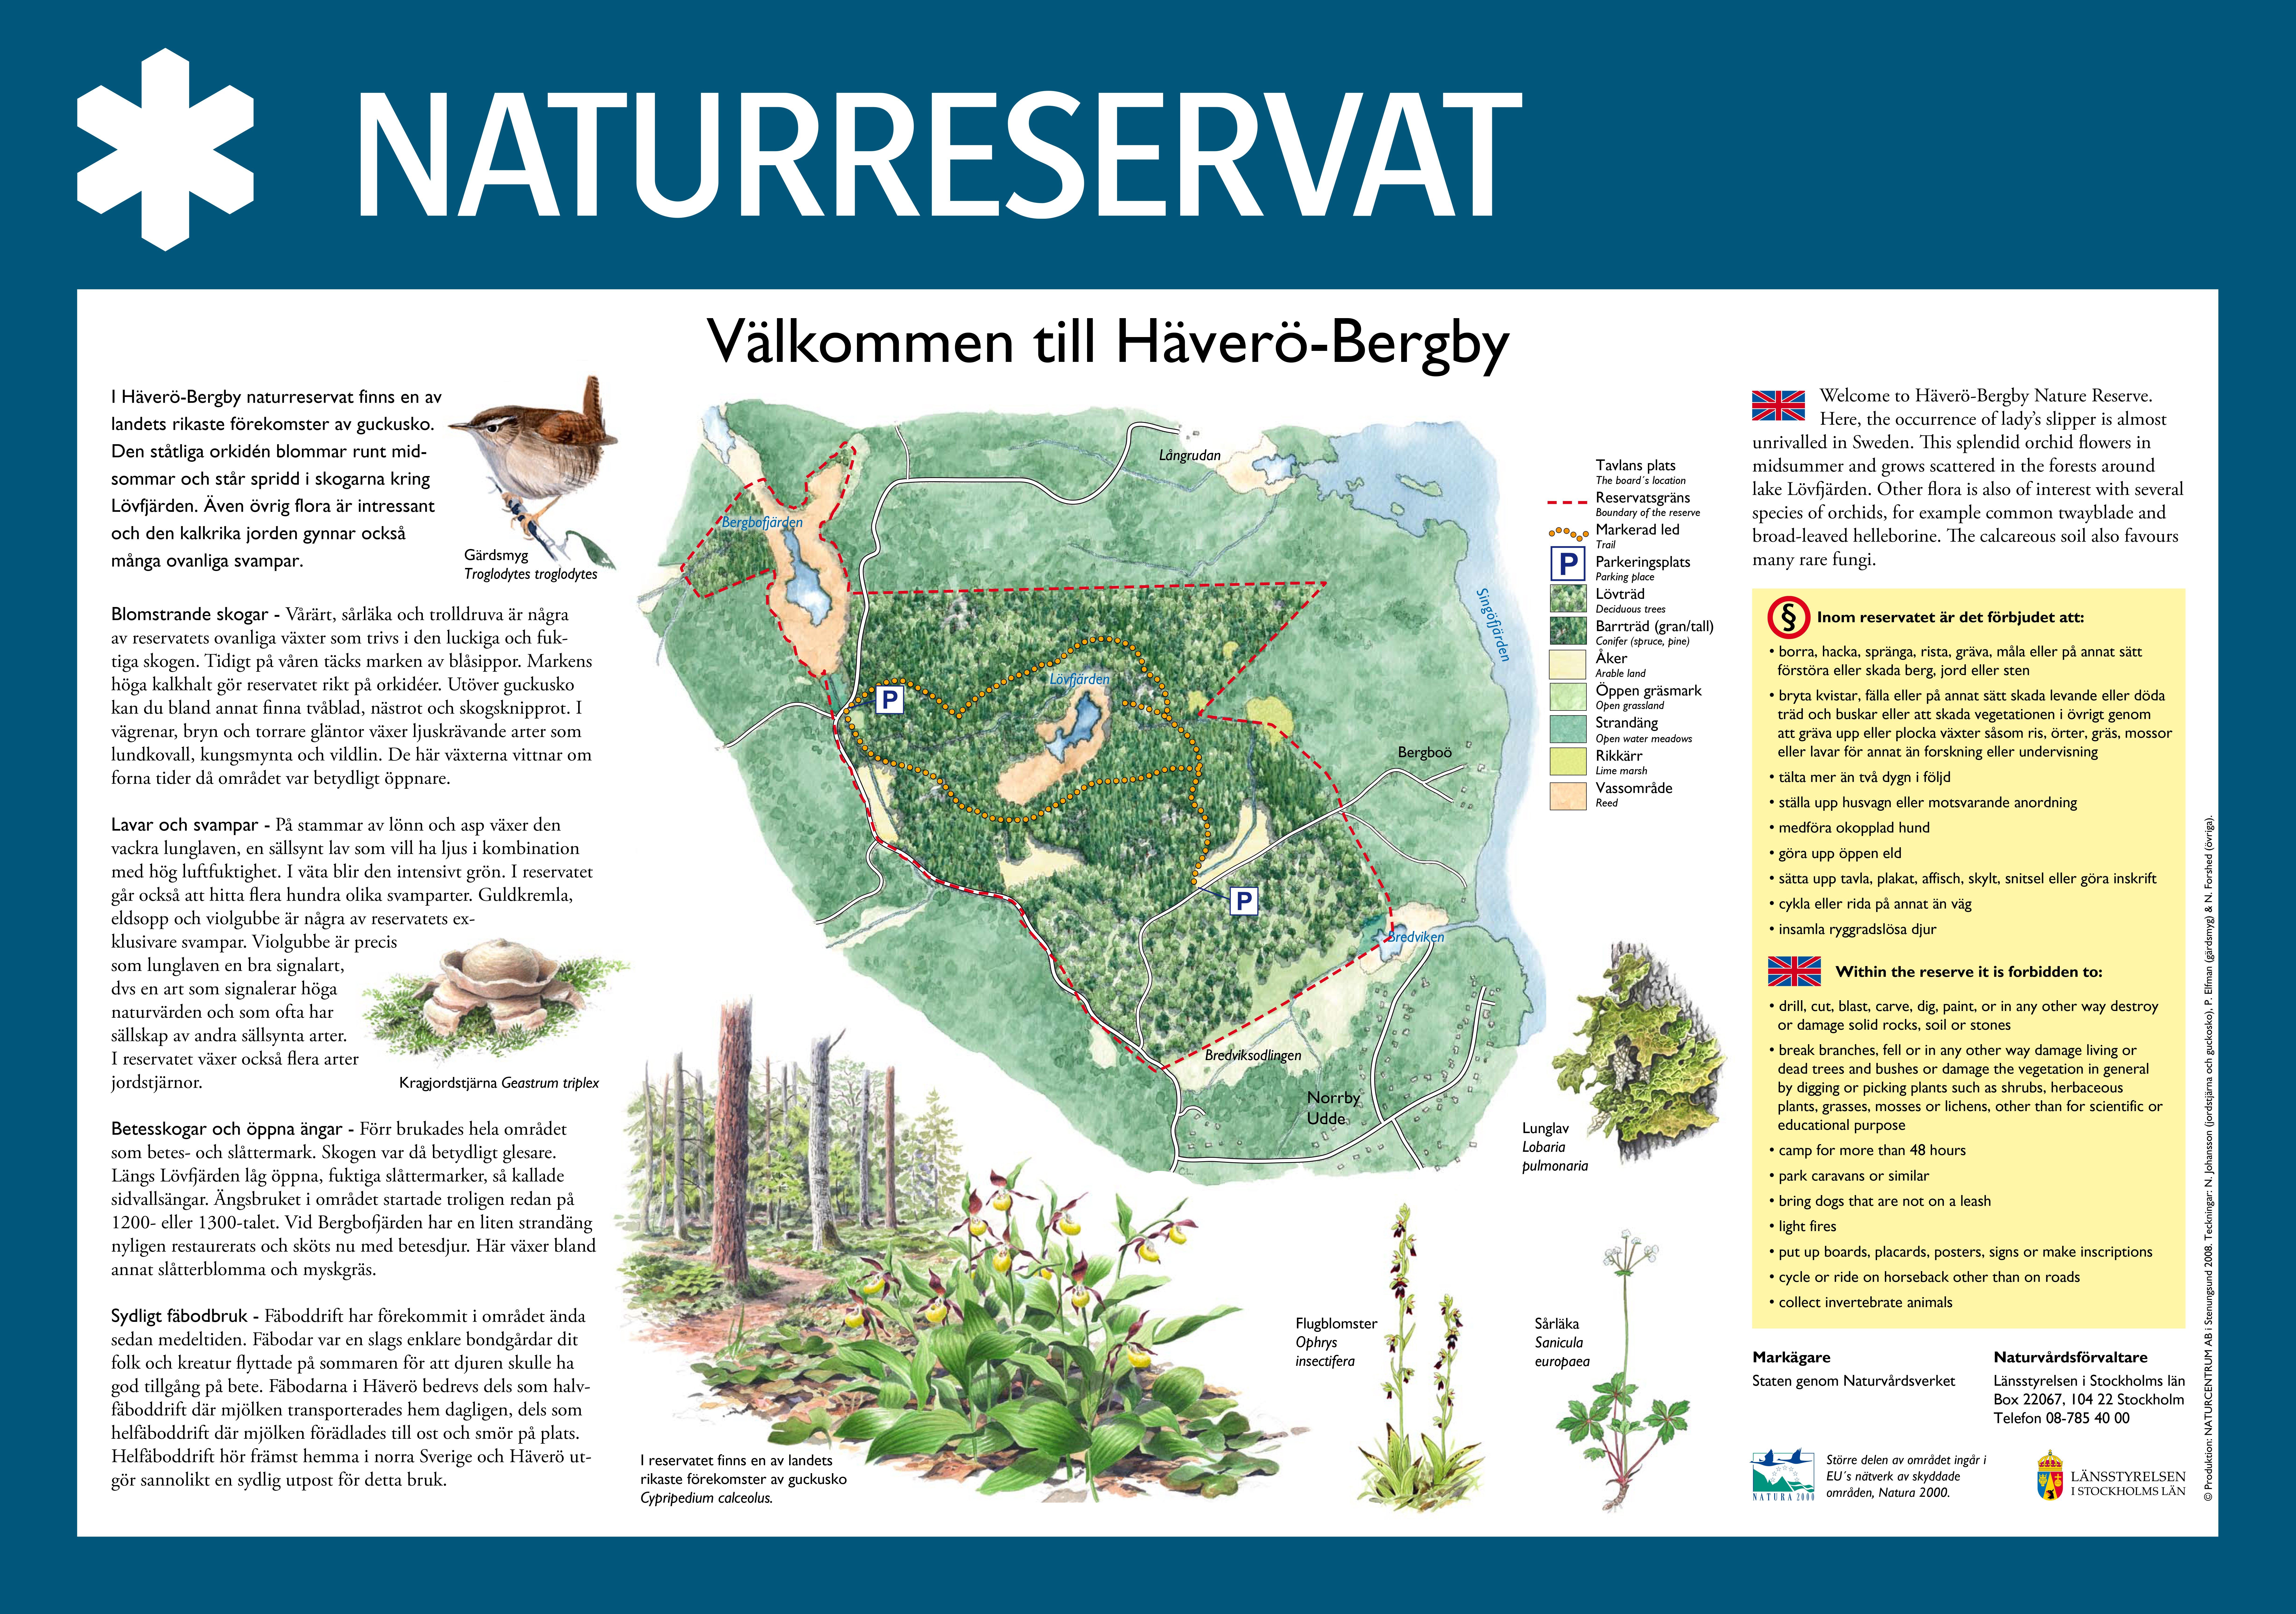 Välkommen till Häverö-Bergby naturreservat.